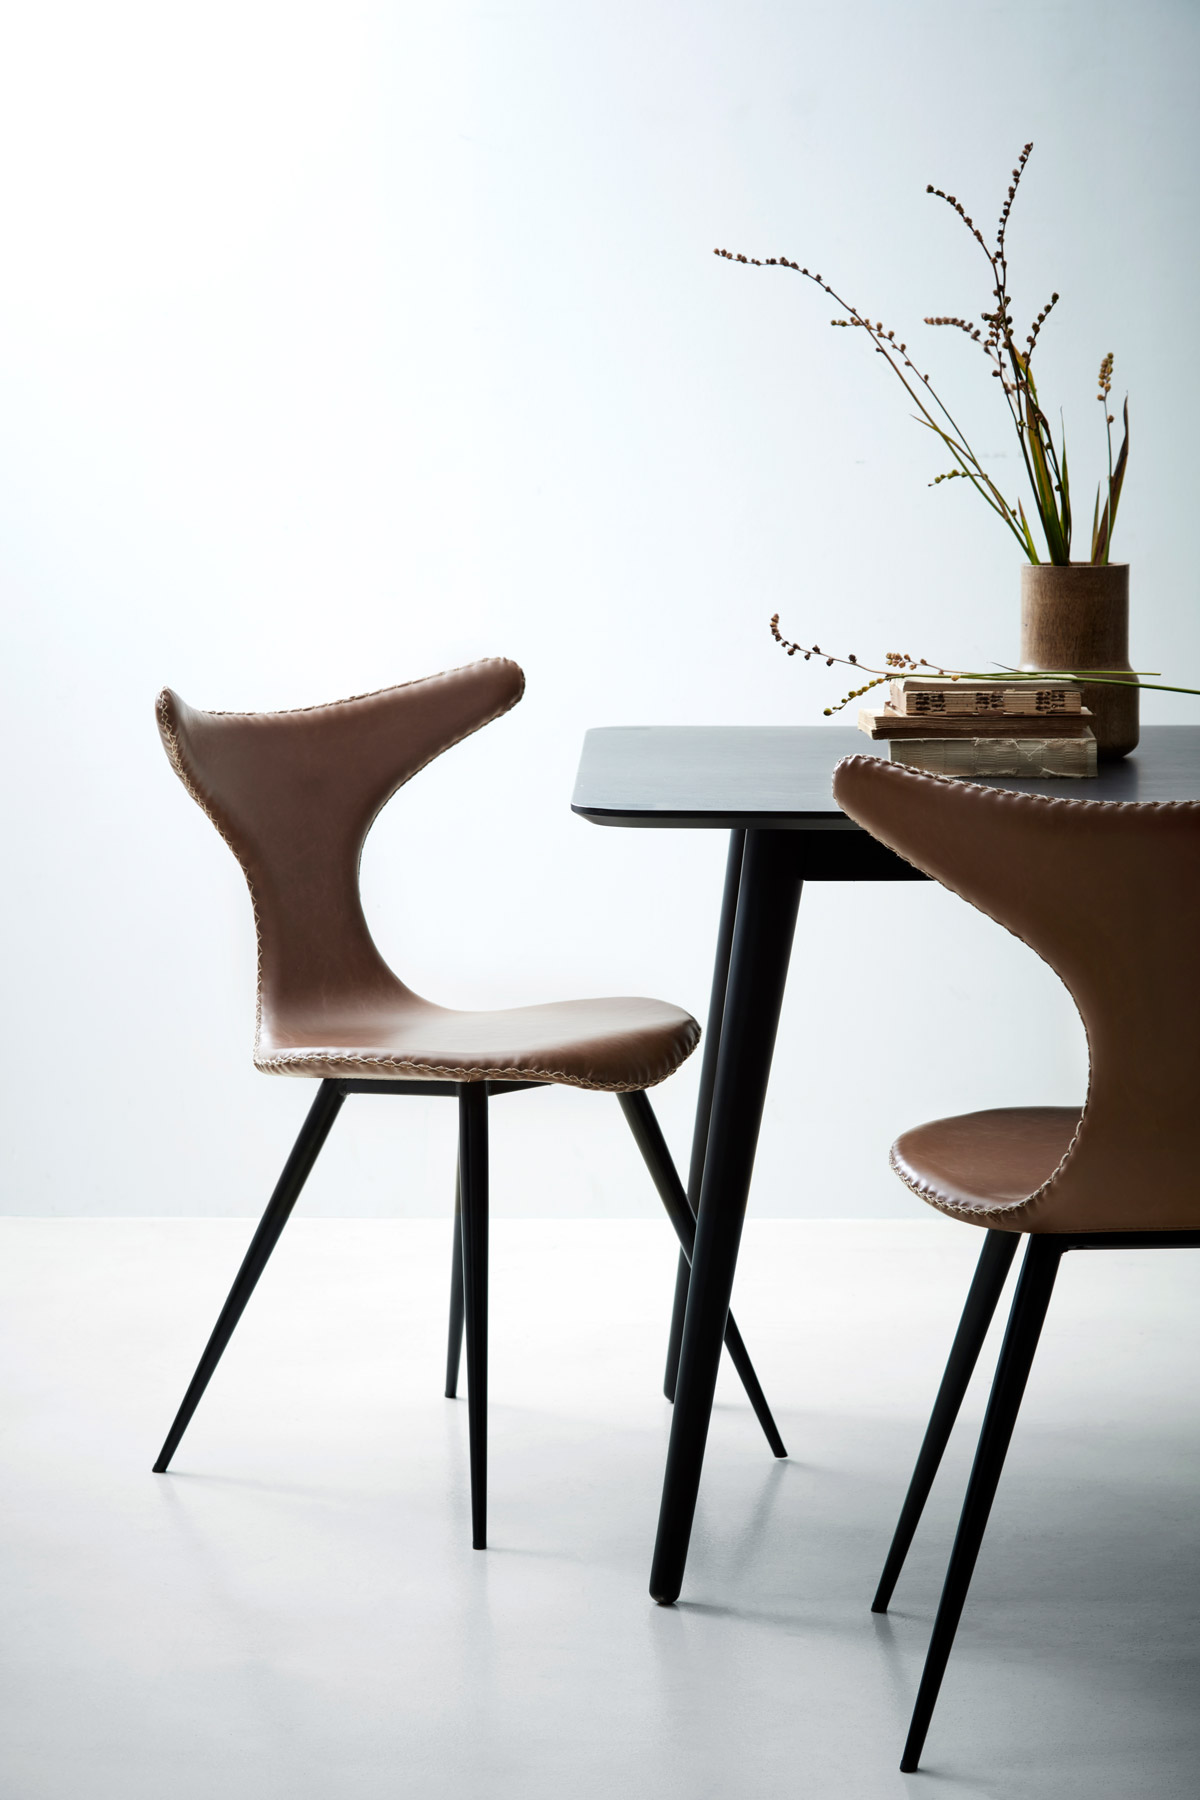 Läderstol i fina detaljer från Danform gör sig fin bredvid det svarta matbordet.